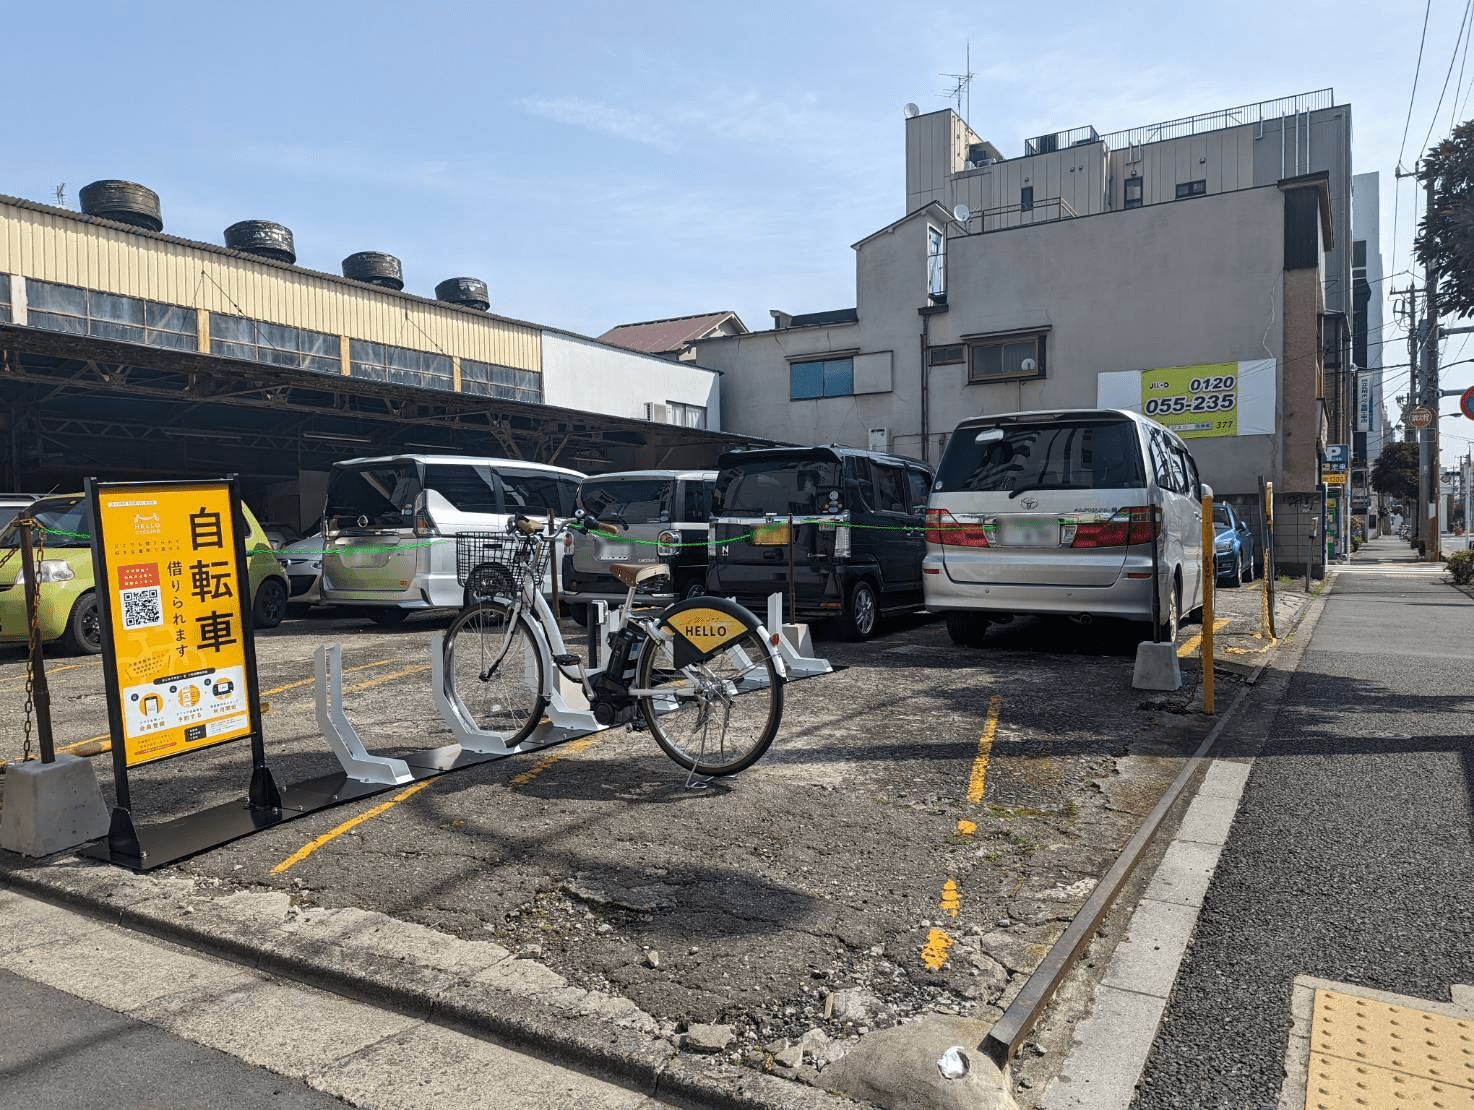 坂本自動車 明治通り沿い駐車場 (HELLO CYCLING ポート)の画像1